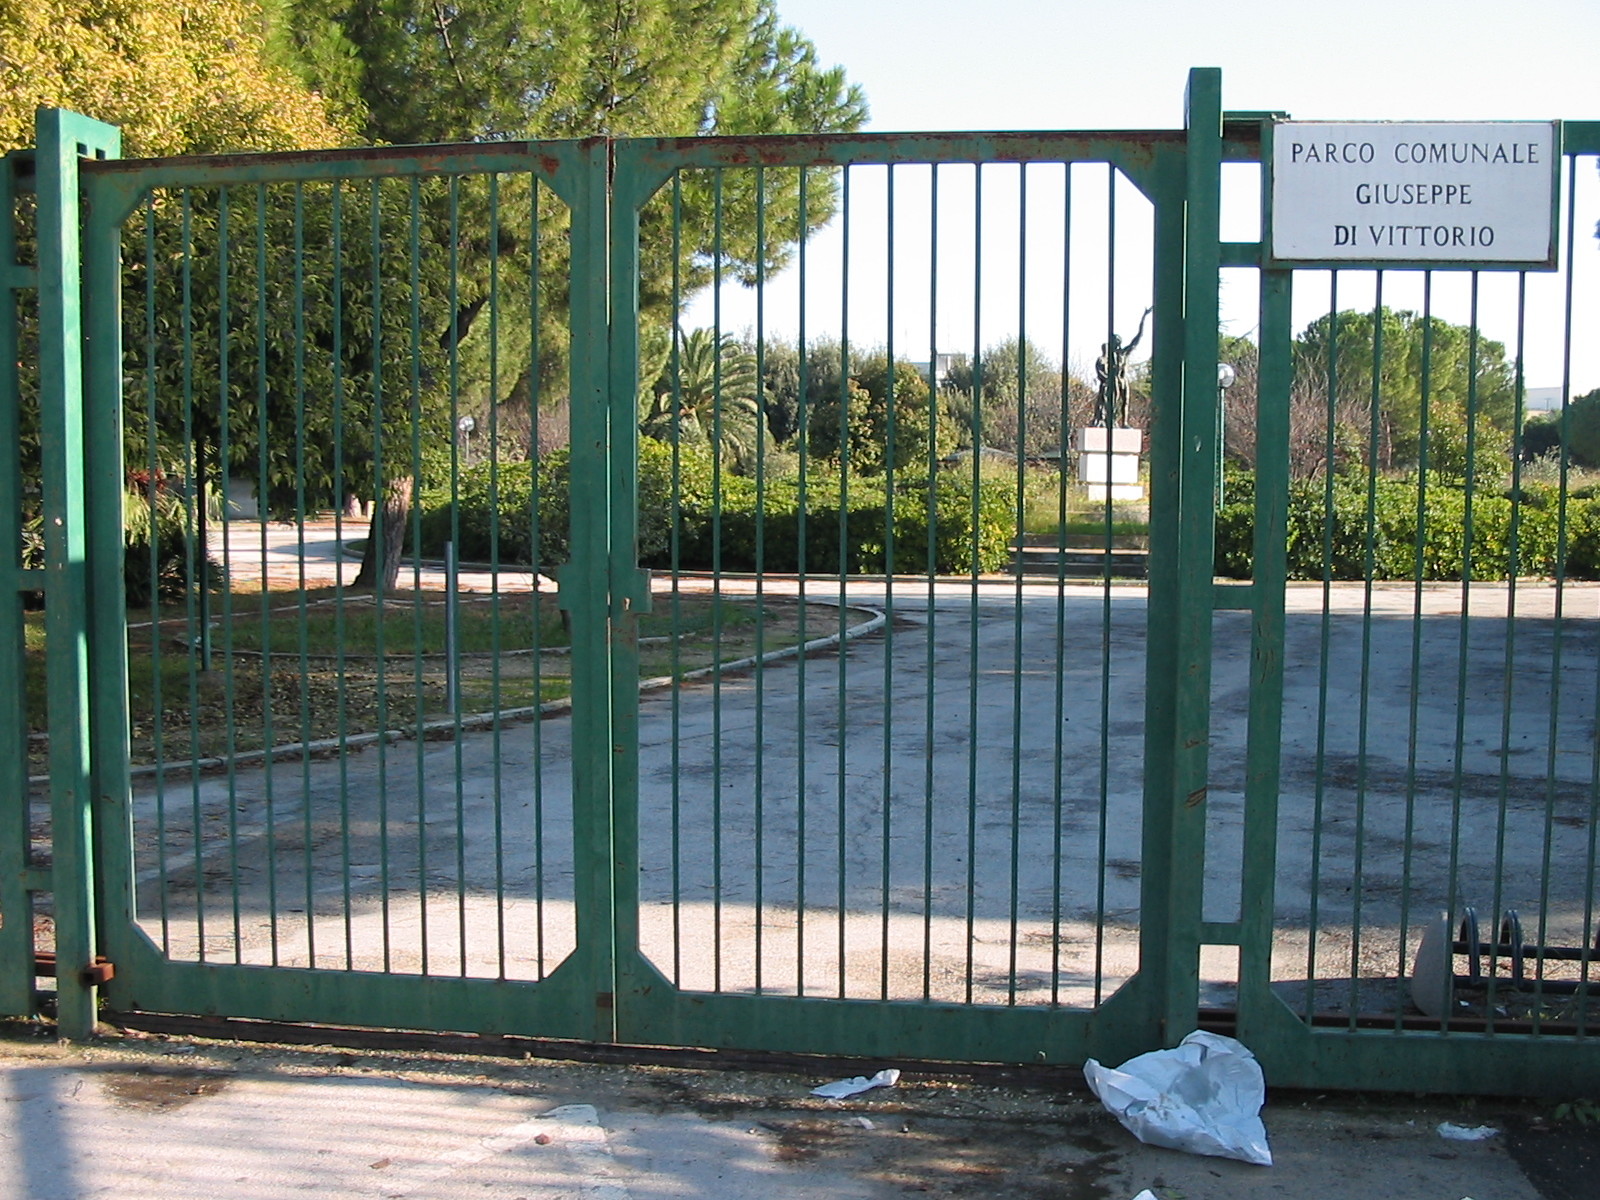 Parco comunale "Giuseppe Di Vittorio" sempre chiuso (San Ferdinando di Puglia)